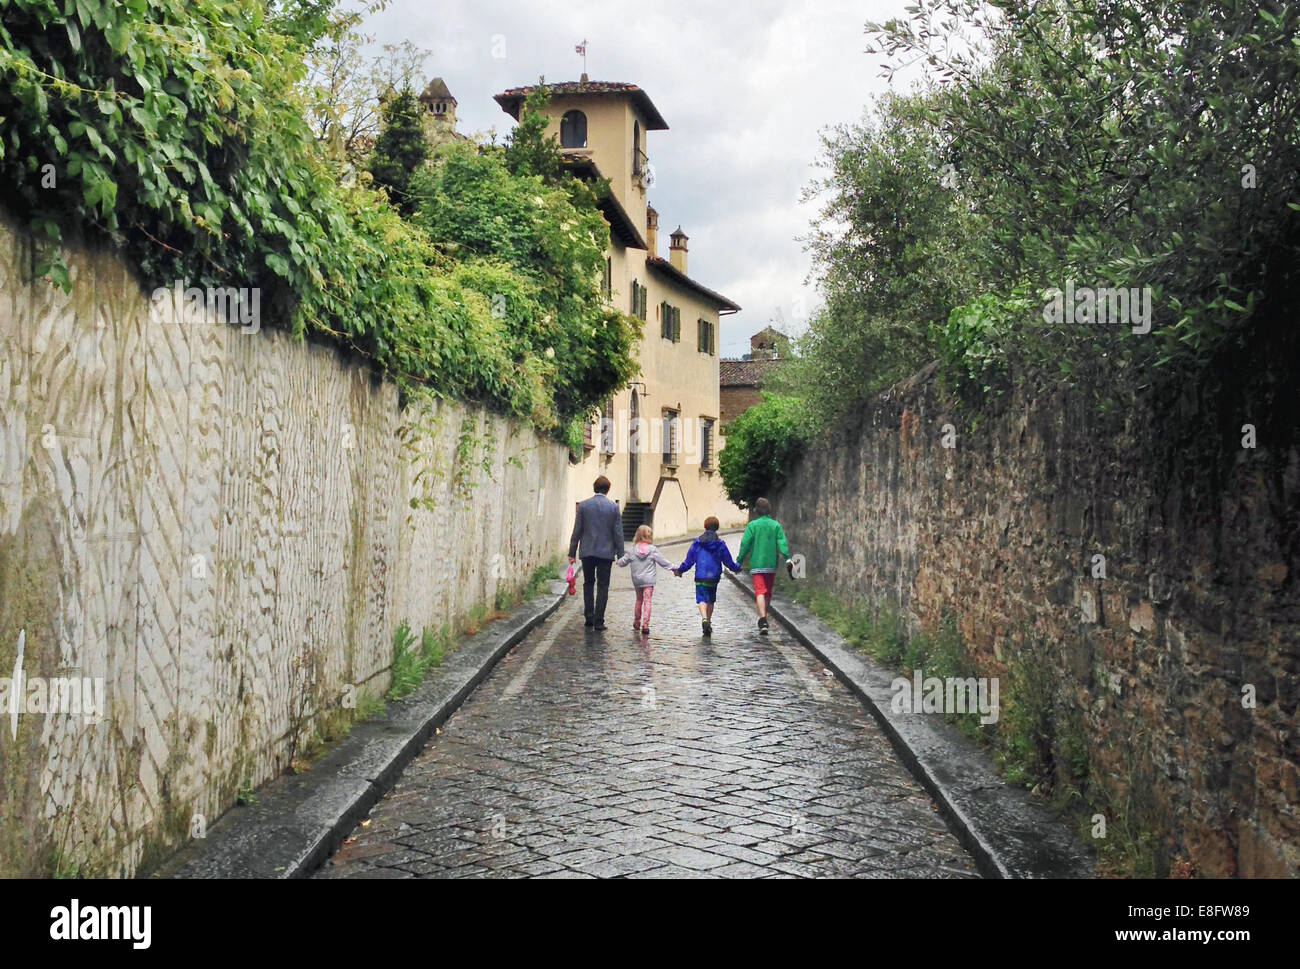 Vater und drei Kinder, die die Straße hinunter laufen, Florenz, Toskana, Italien Stockfoto